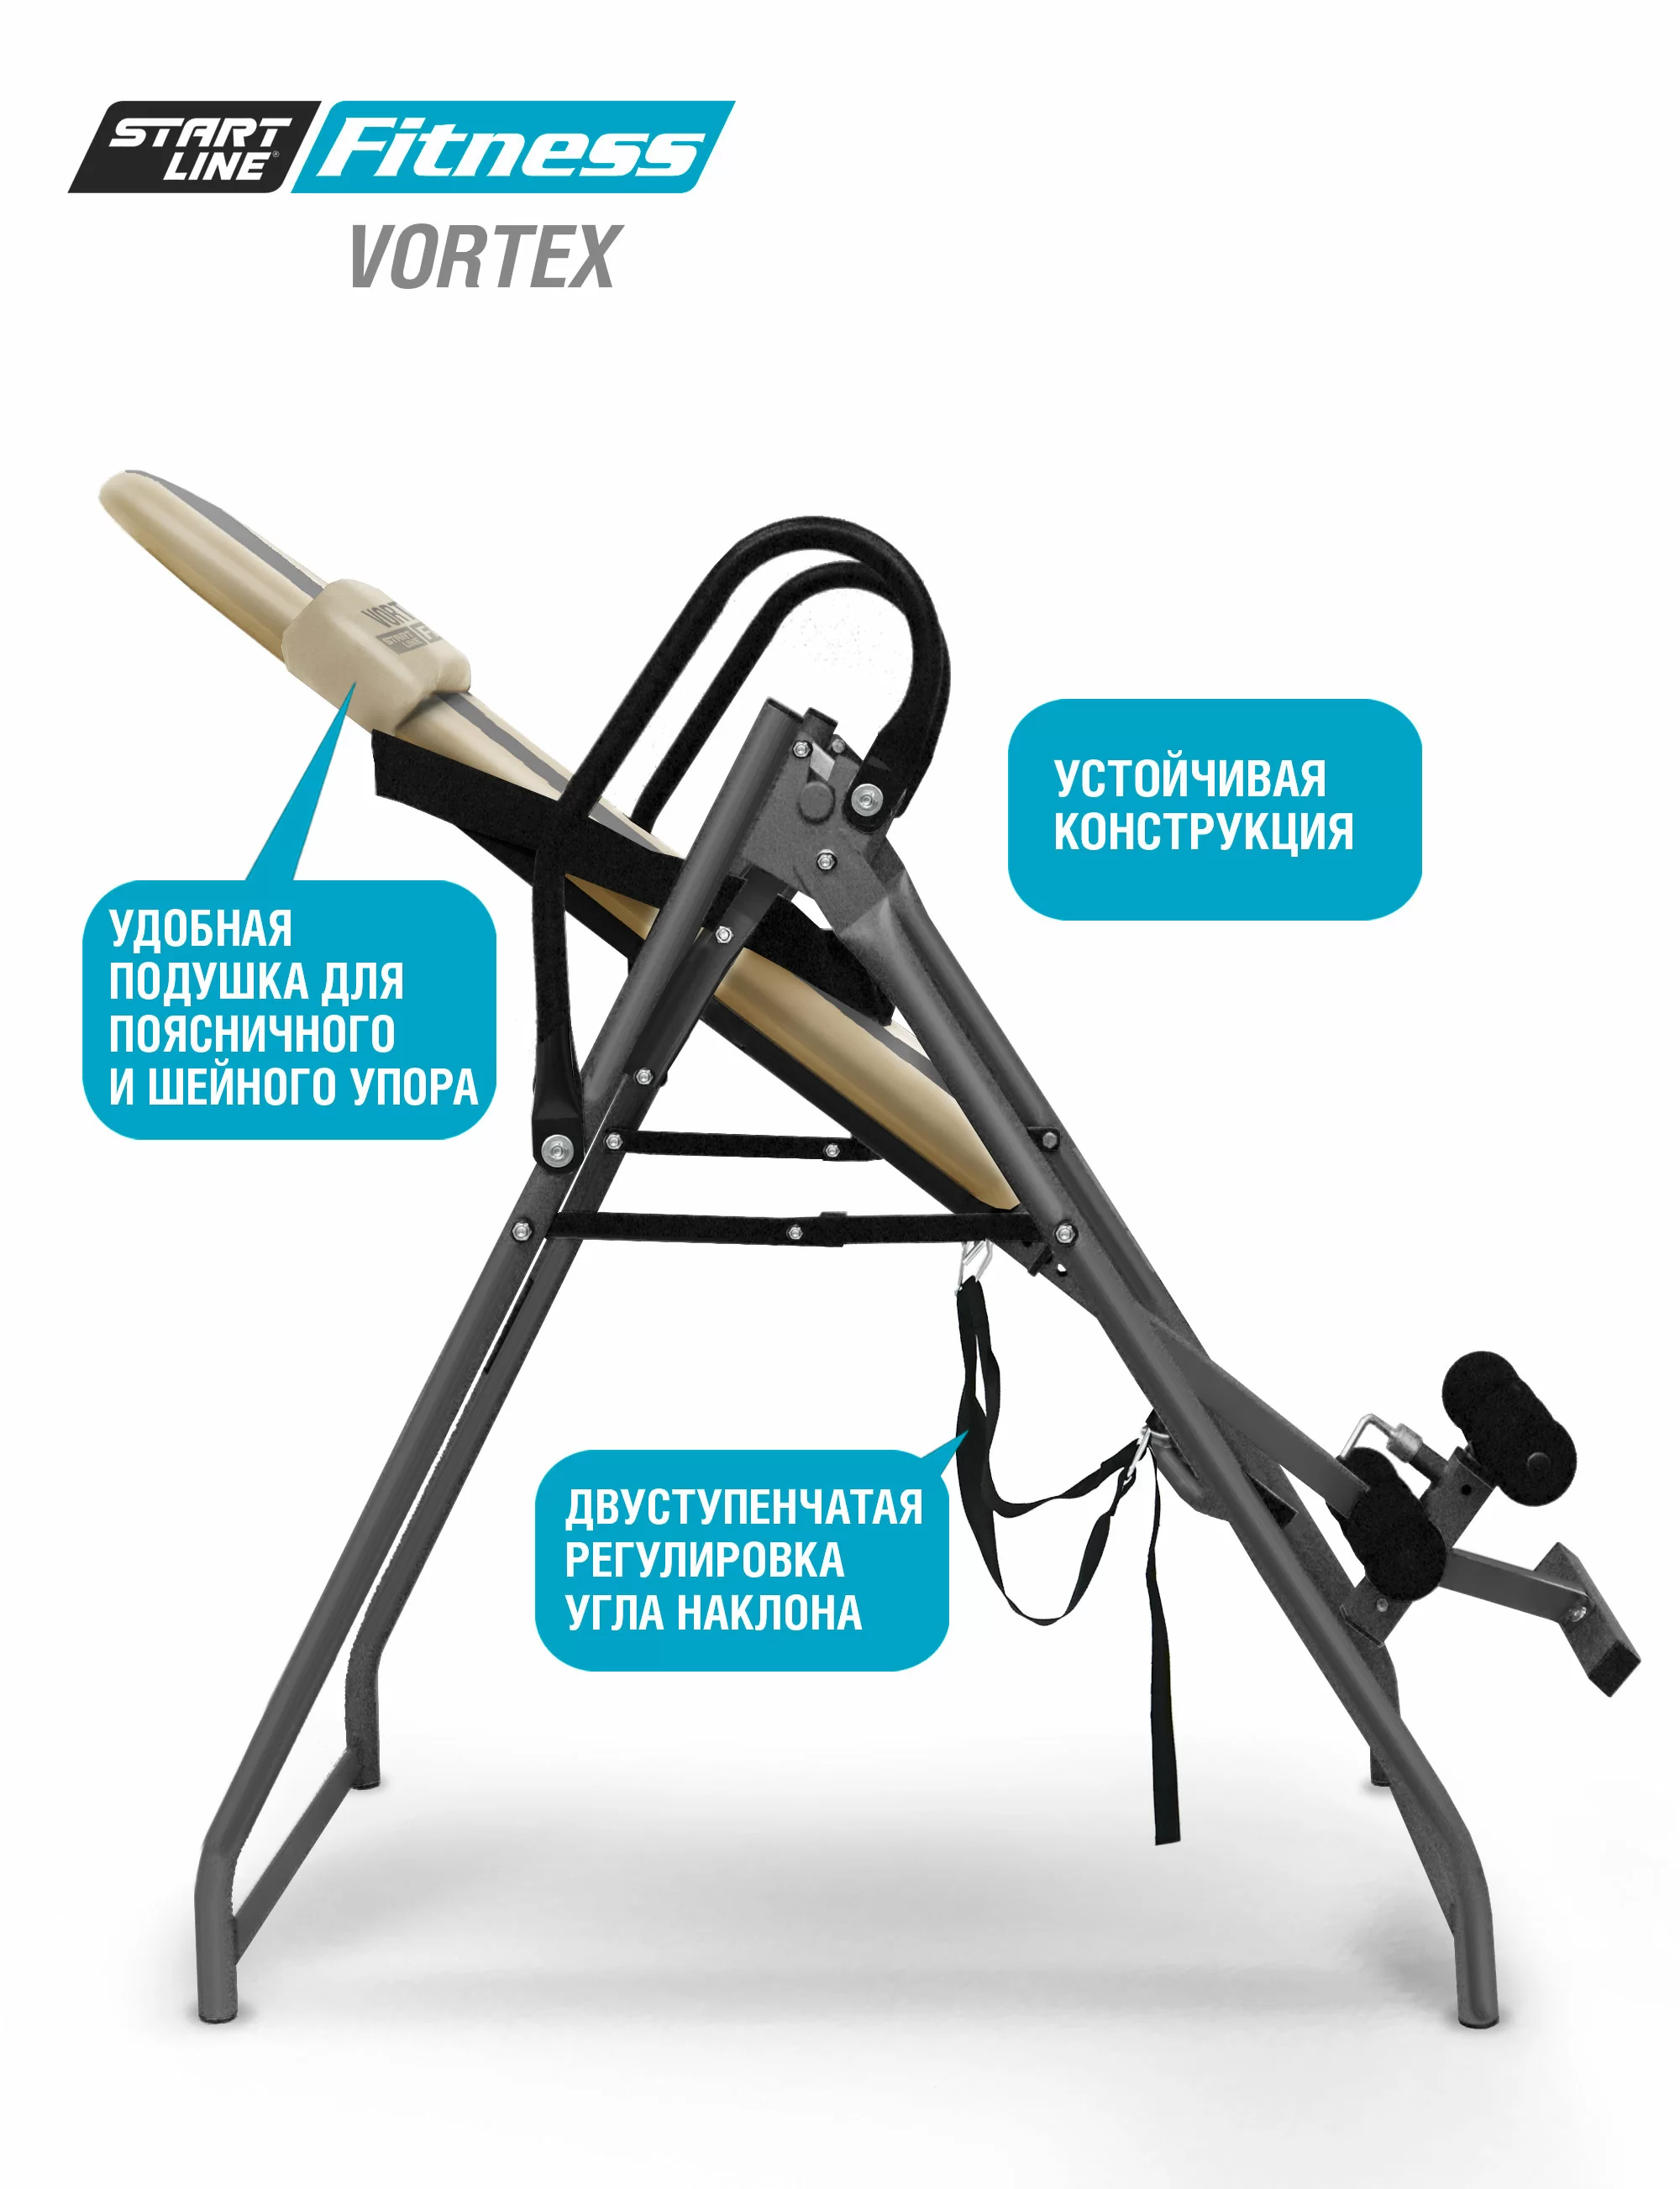 Реальное фото Инверсионный стол Vortex бежево-серый c подушкой от магазина СпортСЕ